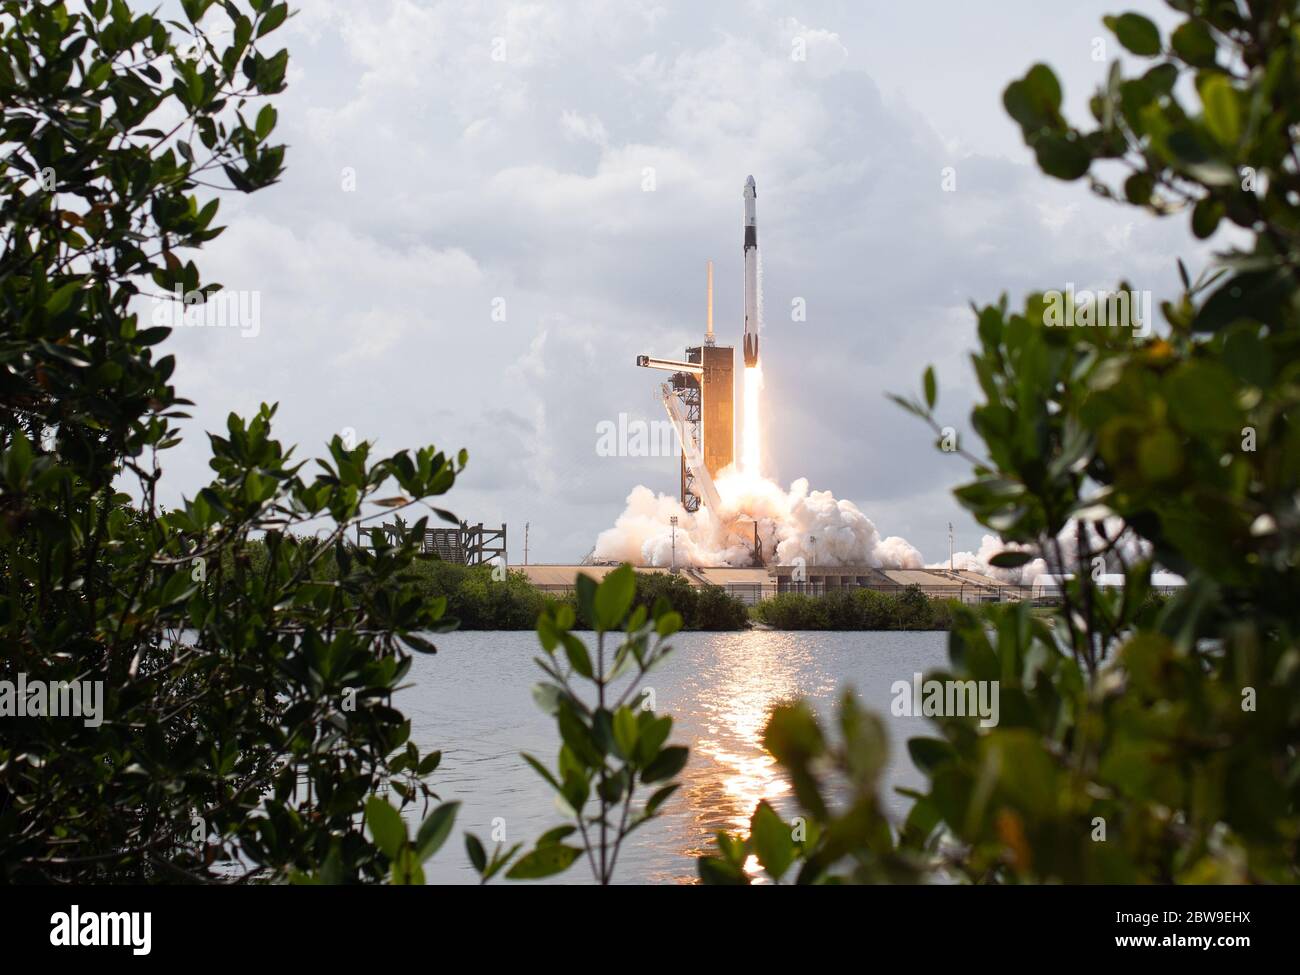 Cabo Cañaveral, Estados Unidos de América. 30 de mayo de 2020. El cohete Spacex Falcon 9 que transporta la nave espacial Crew Dragon en la misión Spacex Demo-2 de la NASA se desate del complejo de lanzamiento 39A en el Centro Espacial Kennedy el 30 de mayo de 2020, Cabo Cañaveral, en Florida. La nave espacial llevó a los astronautas Douglas Hurley y Robert Behnken a la órbita en su camino a la Estación Espacial Internacional. Crédito: Bill Ingalls/NASA/Alamy Live News Foto de stock